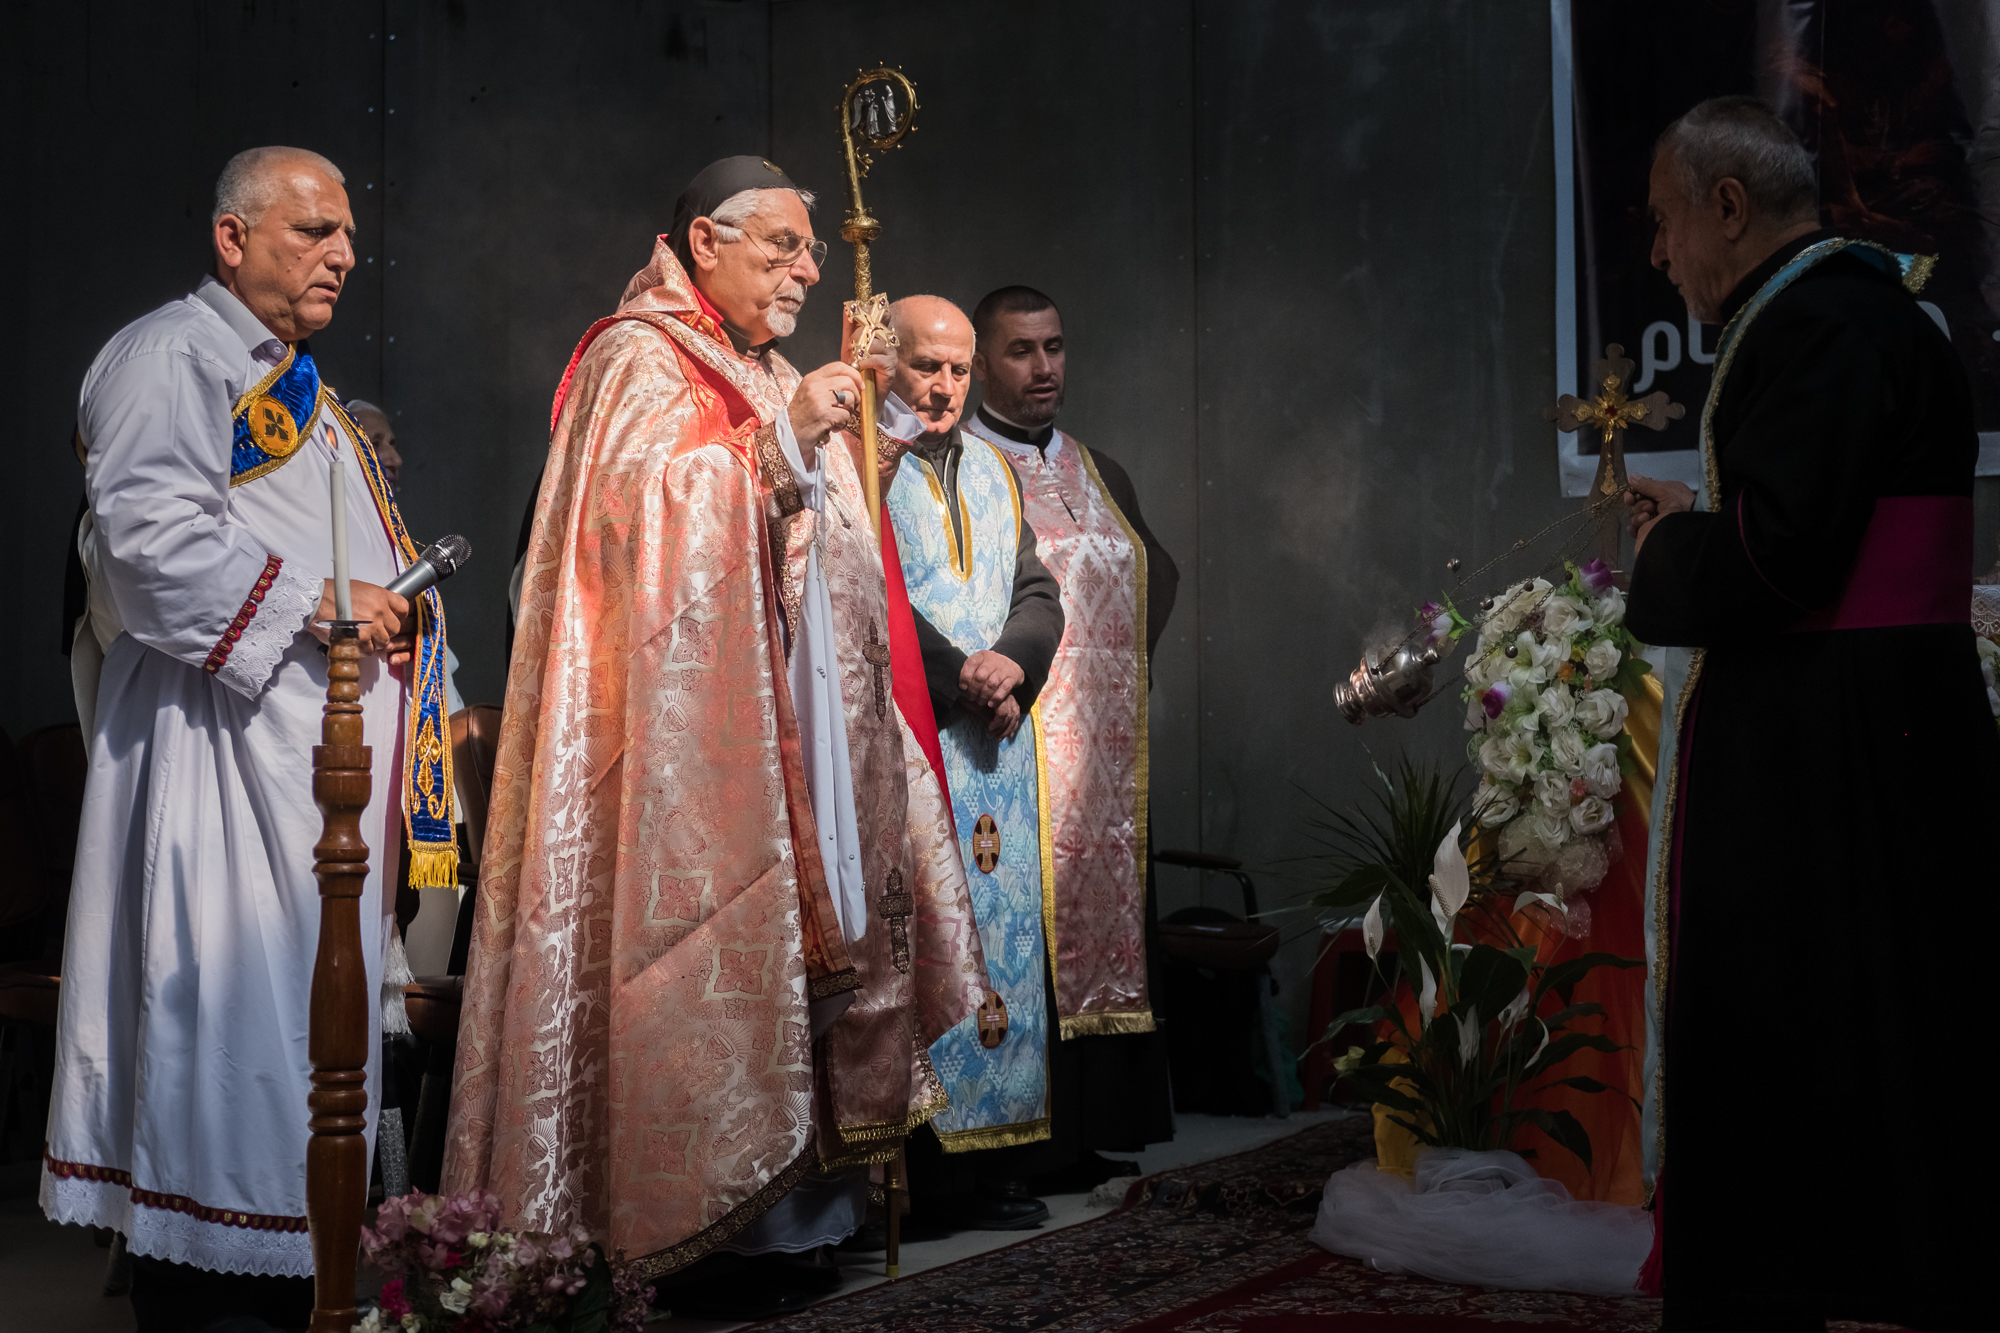 19 avril 2016 : Inauguration et messe de l'église de Mar Shmony - construite pour les chrétiens réfugiés d'Erbil - célébrée par Monseigneur Yohanna Petros MOUCHÉ, archevêque catholique syriaque de Mossoul. Ankawa, Erbil, Kurdistan irakien, Irak - © Jean-Matthieu Gautier - X-Pro 2 - XF 35mm f/2 WR à f/2.8 - 1/5800 - ISO 400